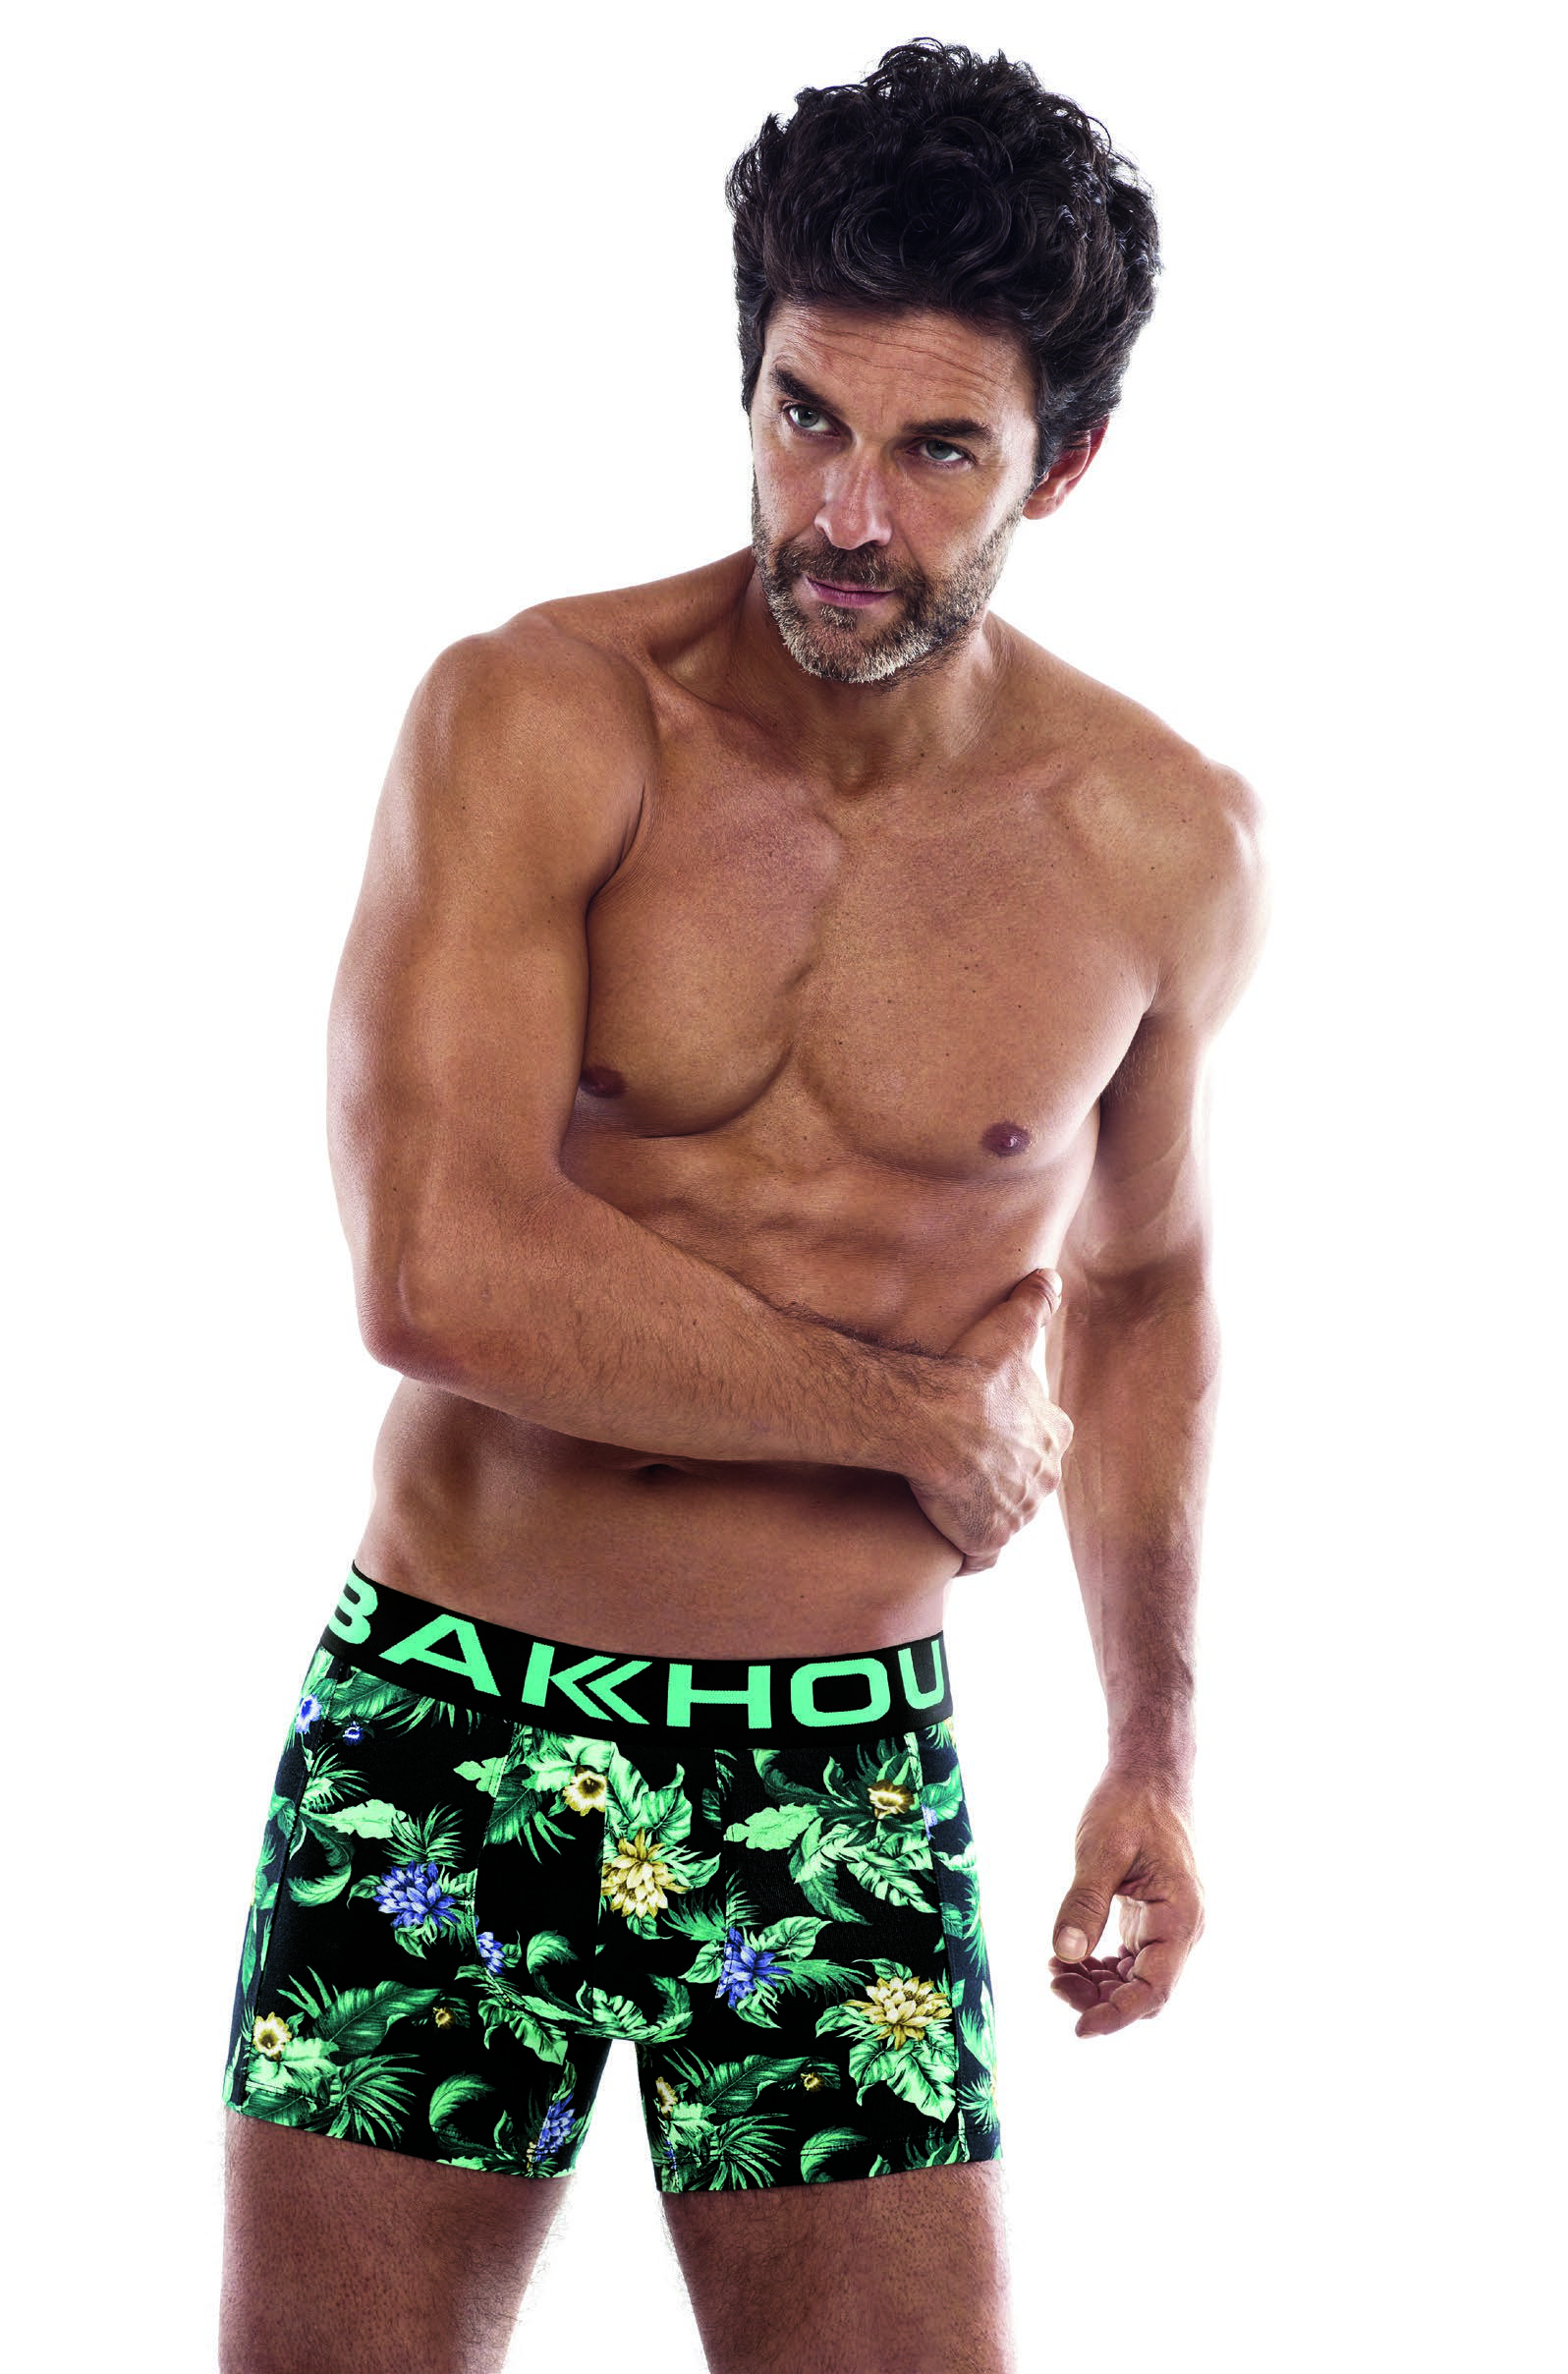 Bakhou (2092) - Boxer algodón y lycra. Estampado Jungle, elástico Bakhou clásico a contratono.